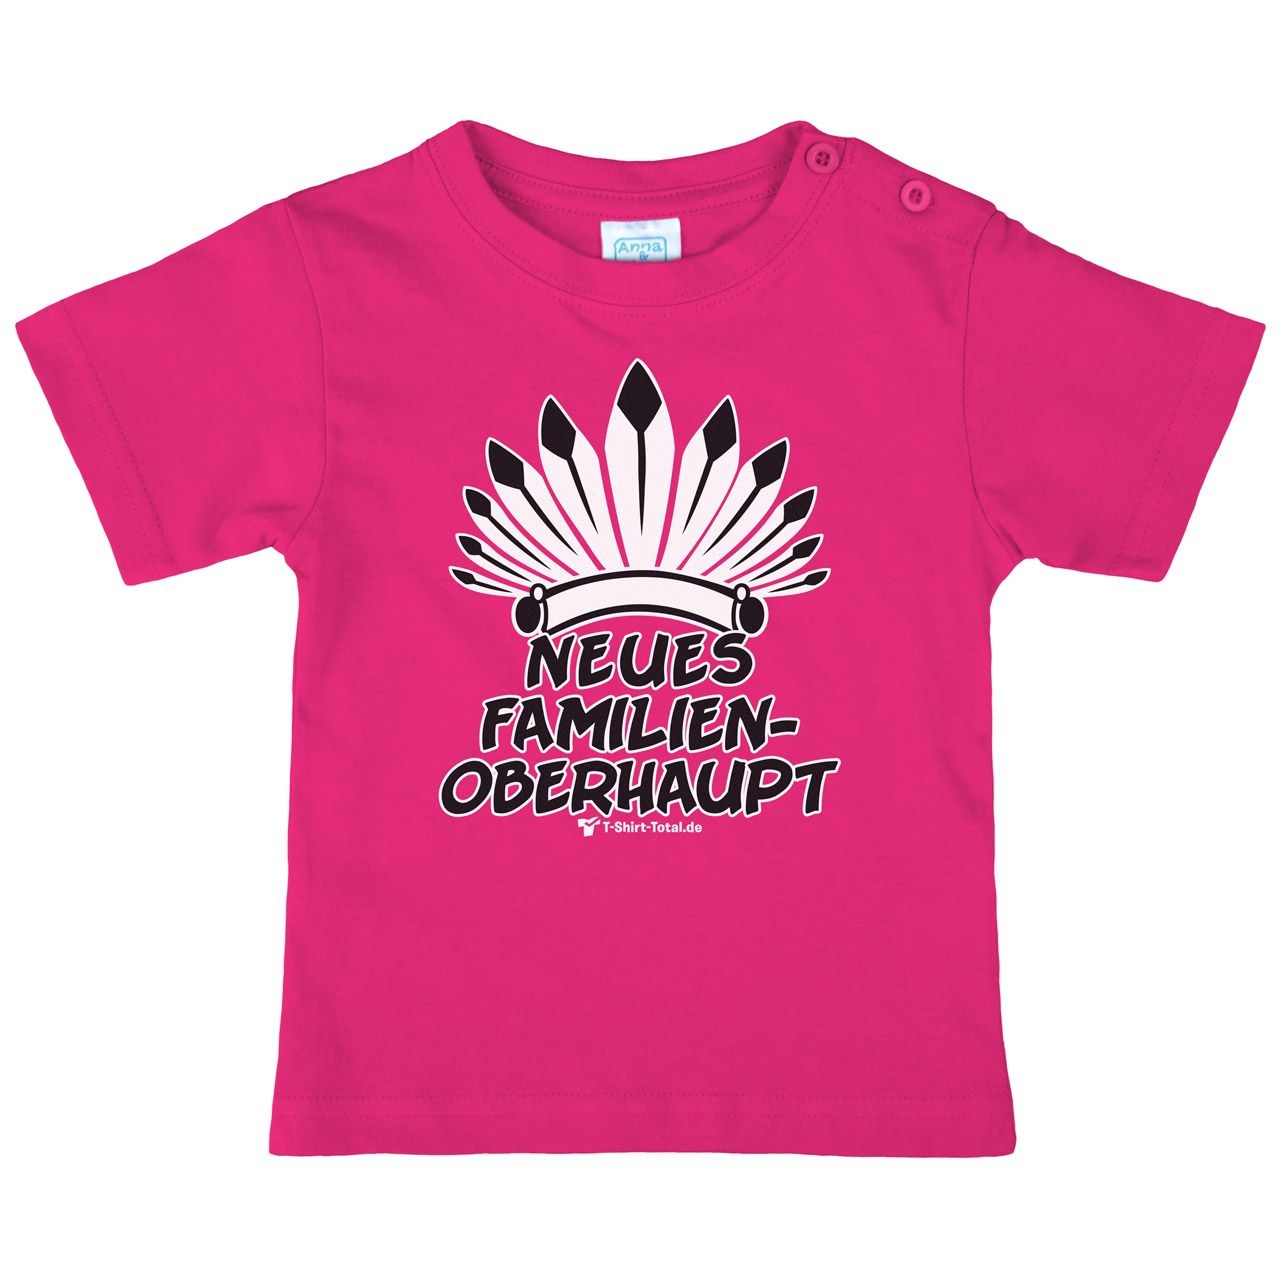 Familienoberhaupt Kinder T-Shirt pink 68 / 74